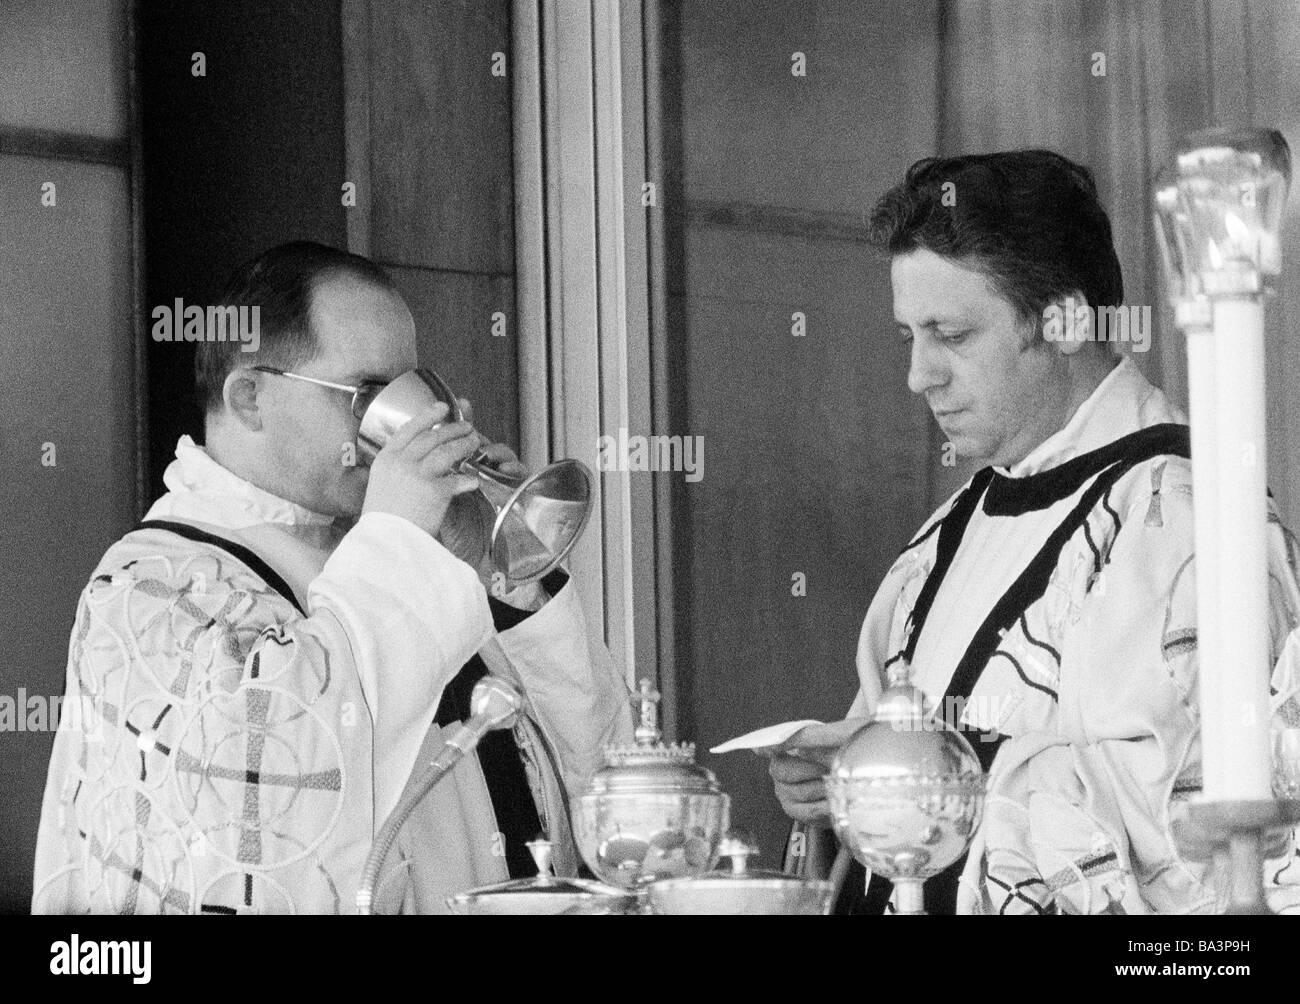 Negli anni settanta, foto in bianco e nero, la religione, il cristianesimo, Santa Messa, eucaristia, accolito beve vino al di fuori della comunione cup, a parte il sacerdote, di età compresa tra 40 a 50 anni Foto Stock